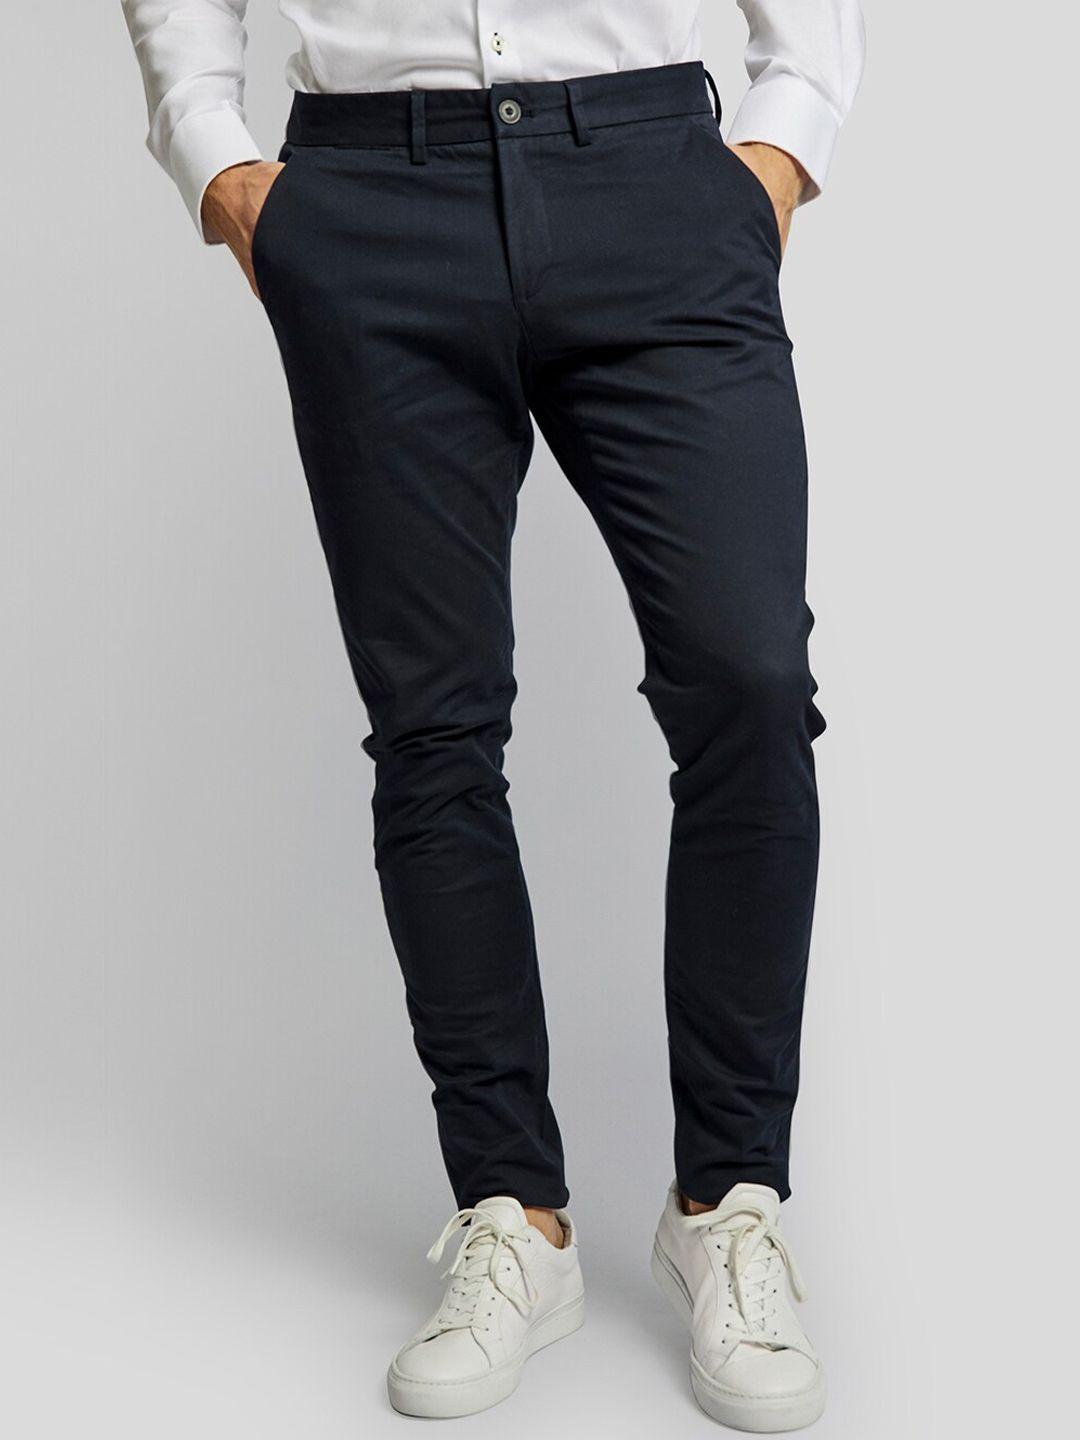 bruun & stengade men navy blue solid slim fit chinos trousers